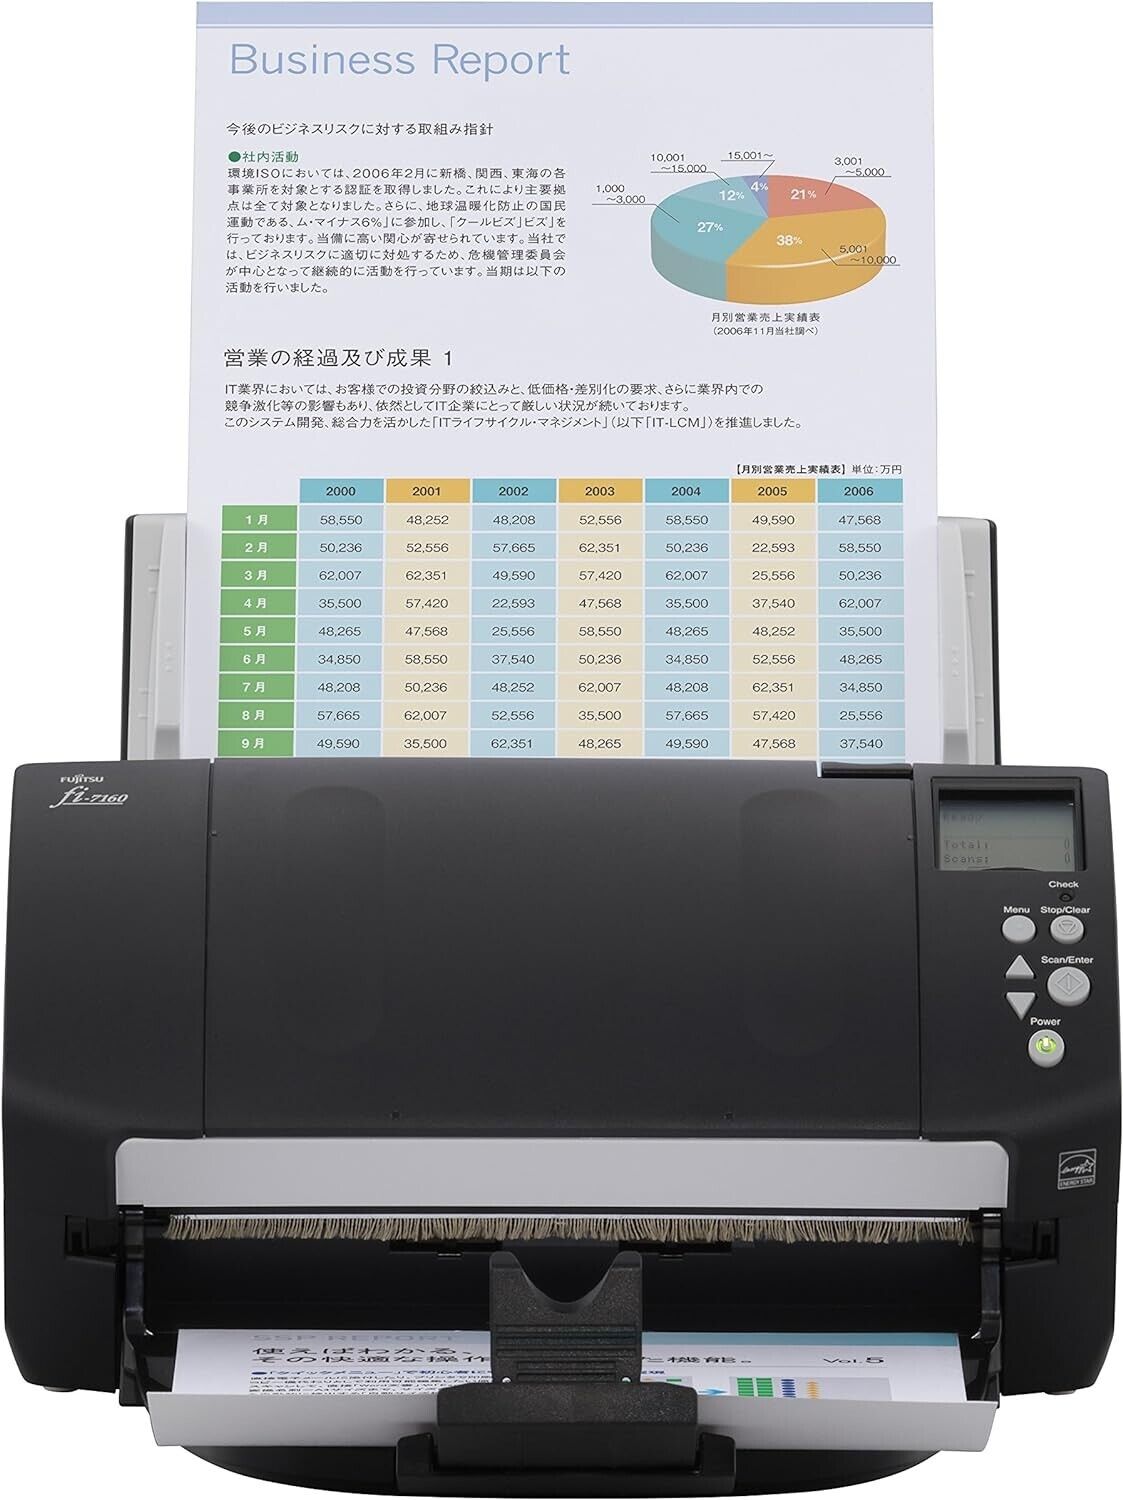 Fujitsu fi-7160 Trade Compliant Professional Desktop Color Duplex Document